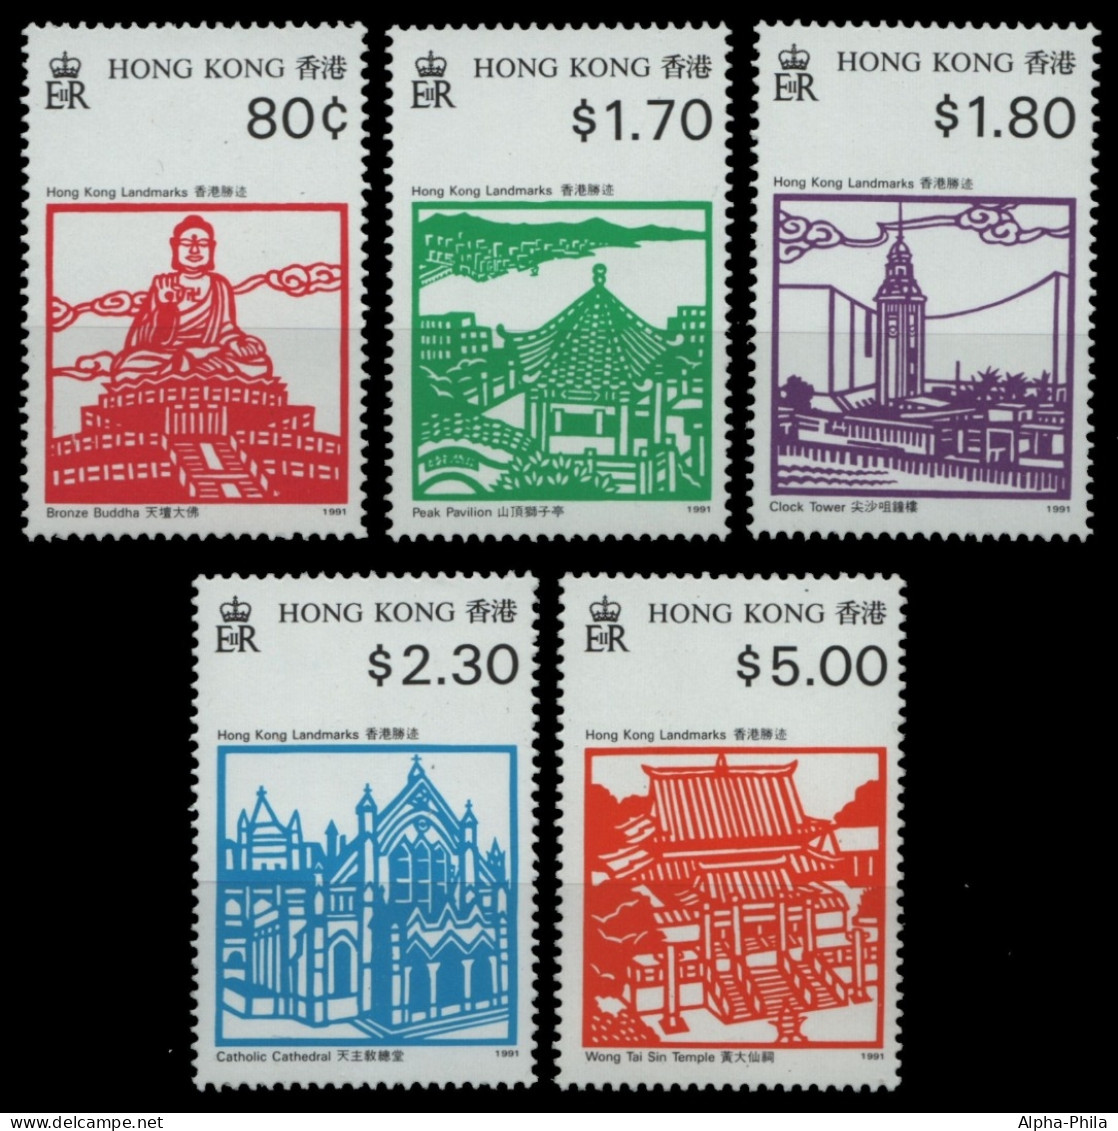 Hongkong 1991 - Mi-Nr. 627-631 ** - MNH - Sehenswürdigkeiten - Nuevos